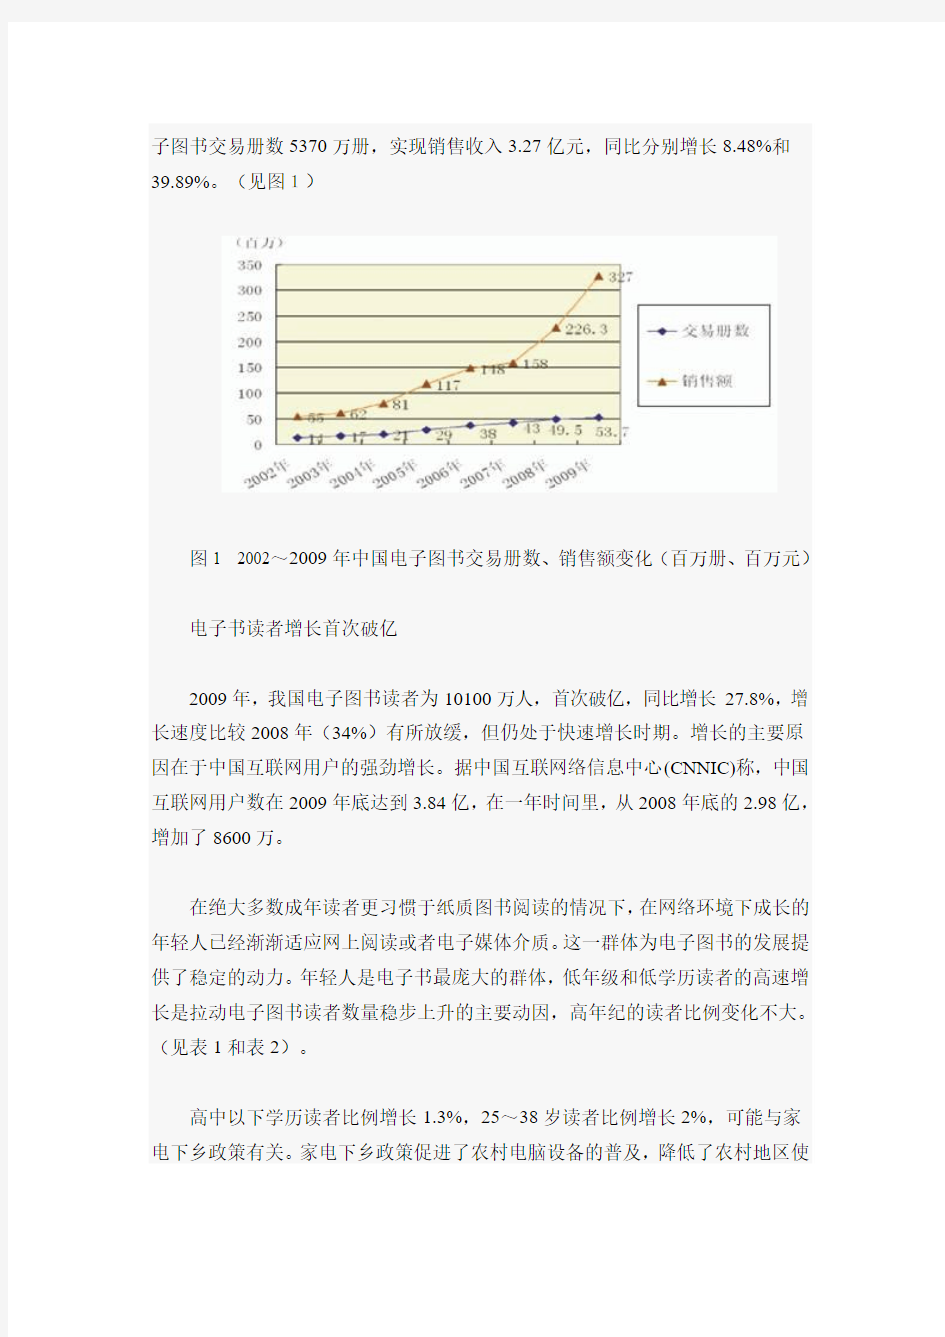 中国电子图书发展趋势报告